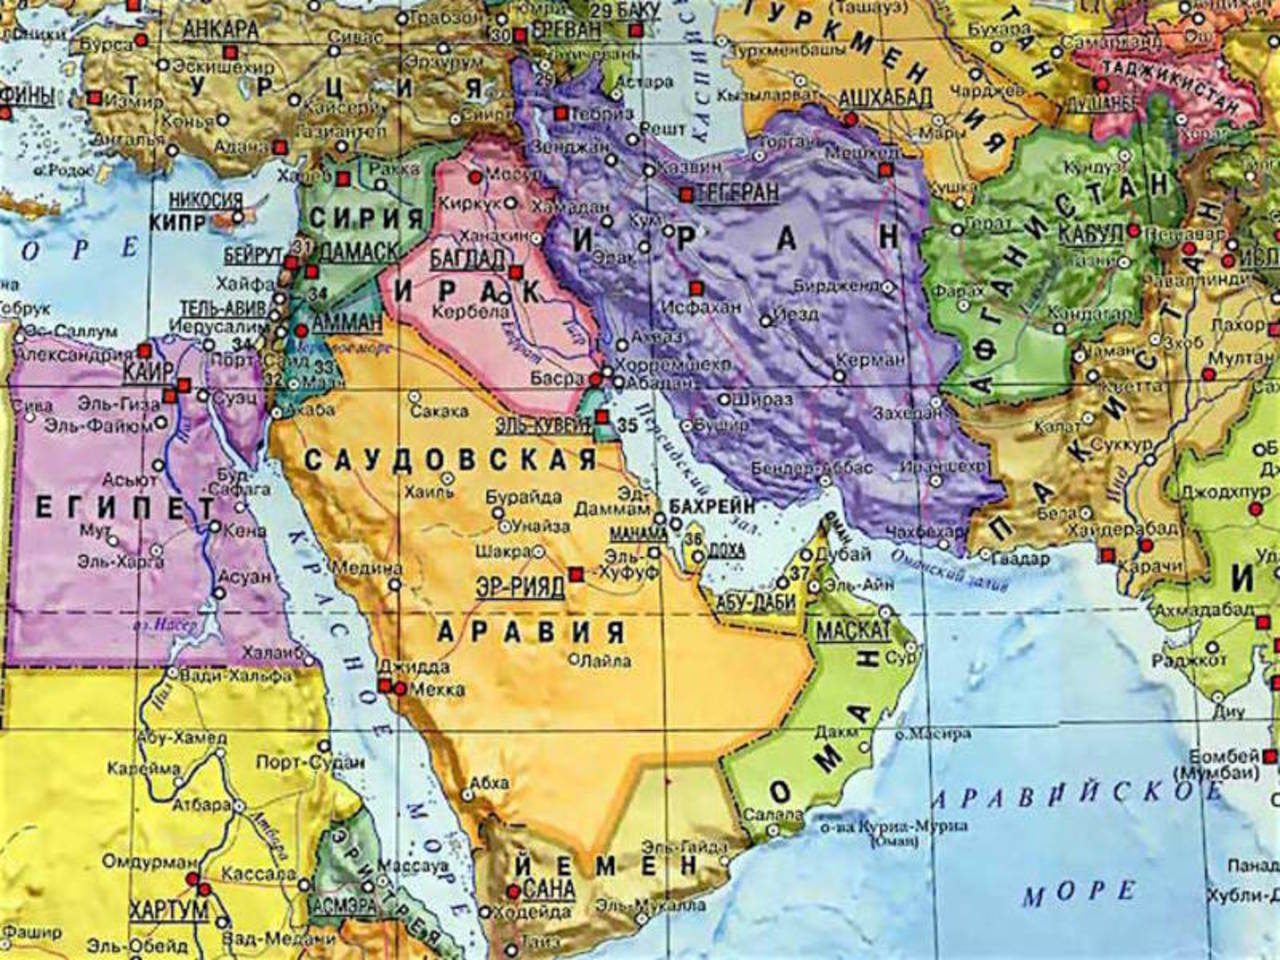 Хаджистан страна где. Политическая карта ближнего Востока. Страны Персидского залива на карте политической. Королевство Саудовская Аравия на карте.